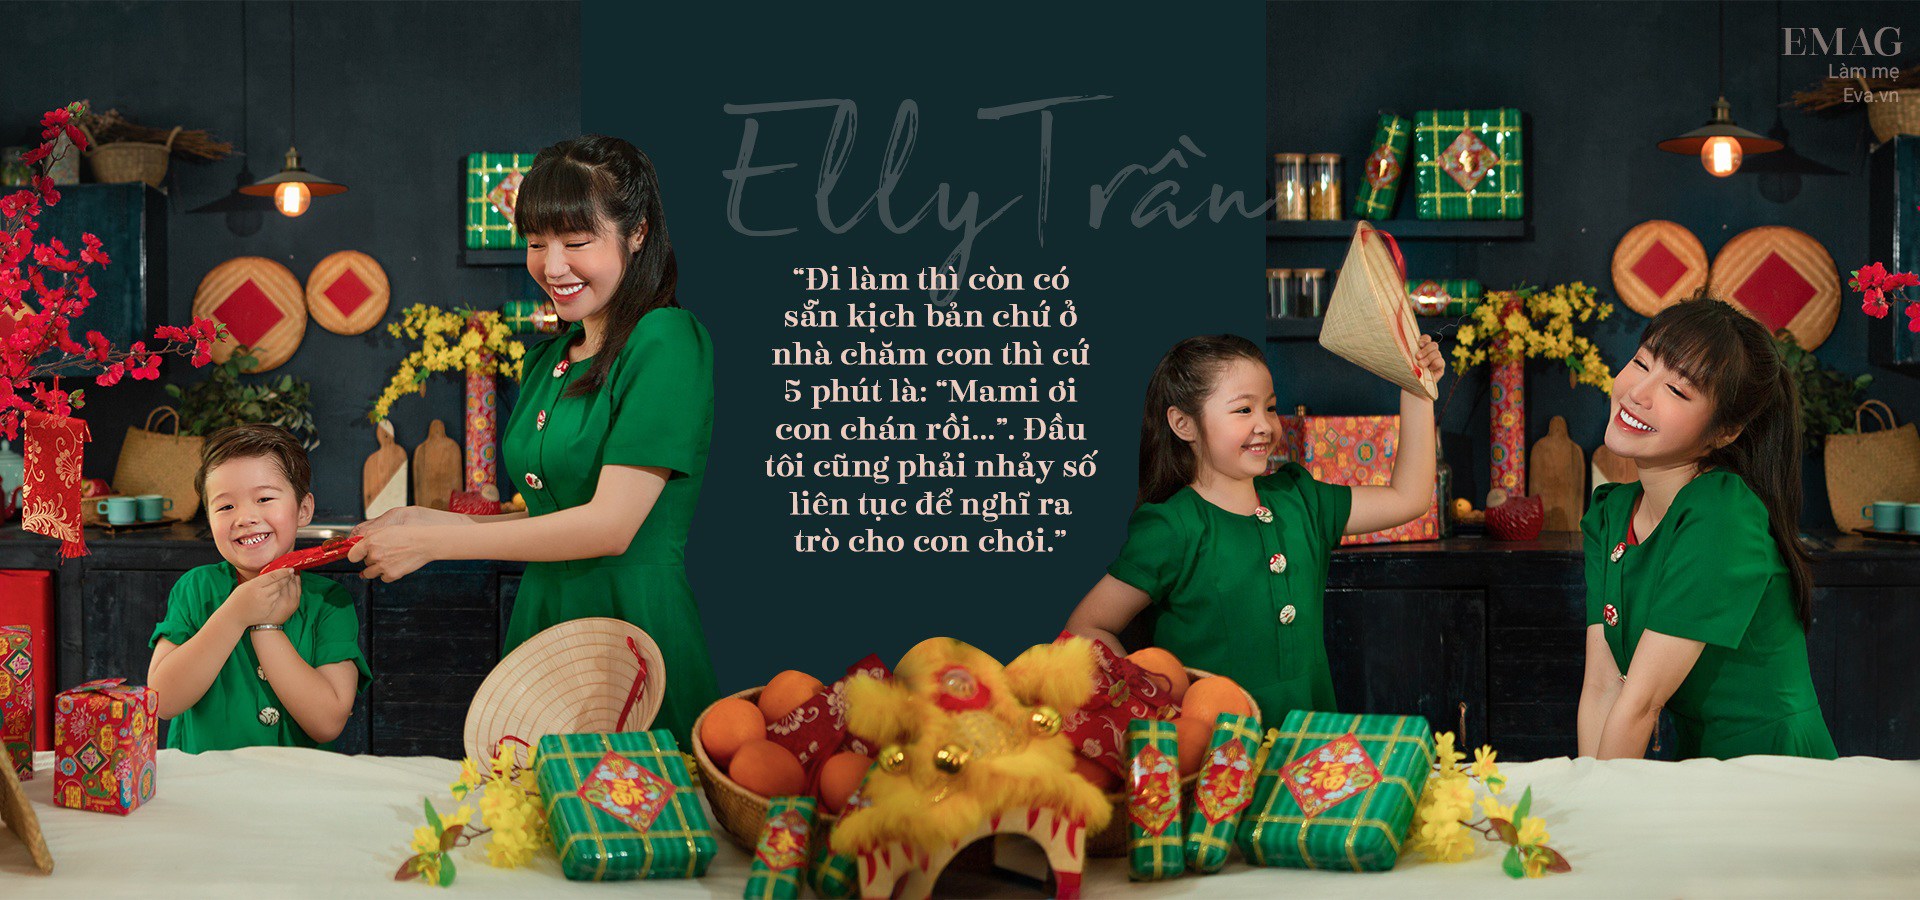 Elly Trần kể chuyện đầu năm: vẫn “chênh vênh” nhưng đã có con bên cạnh, sẽ cho bé du học - 16